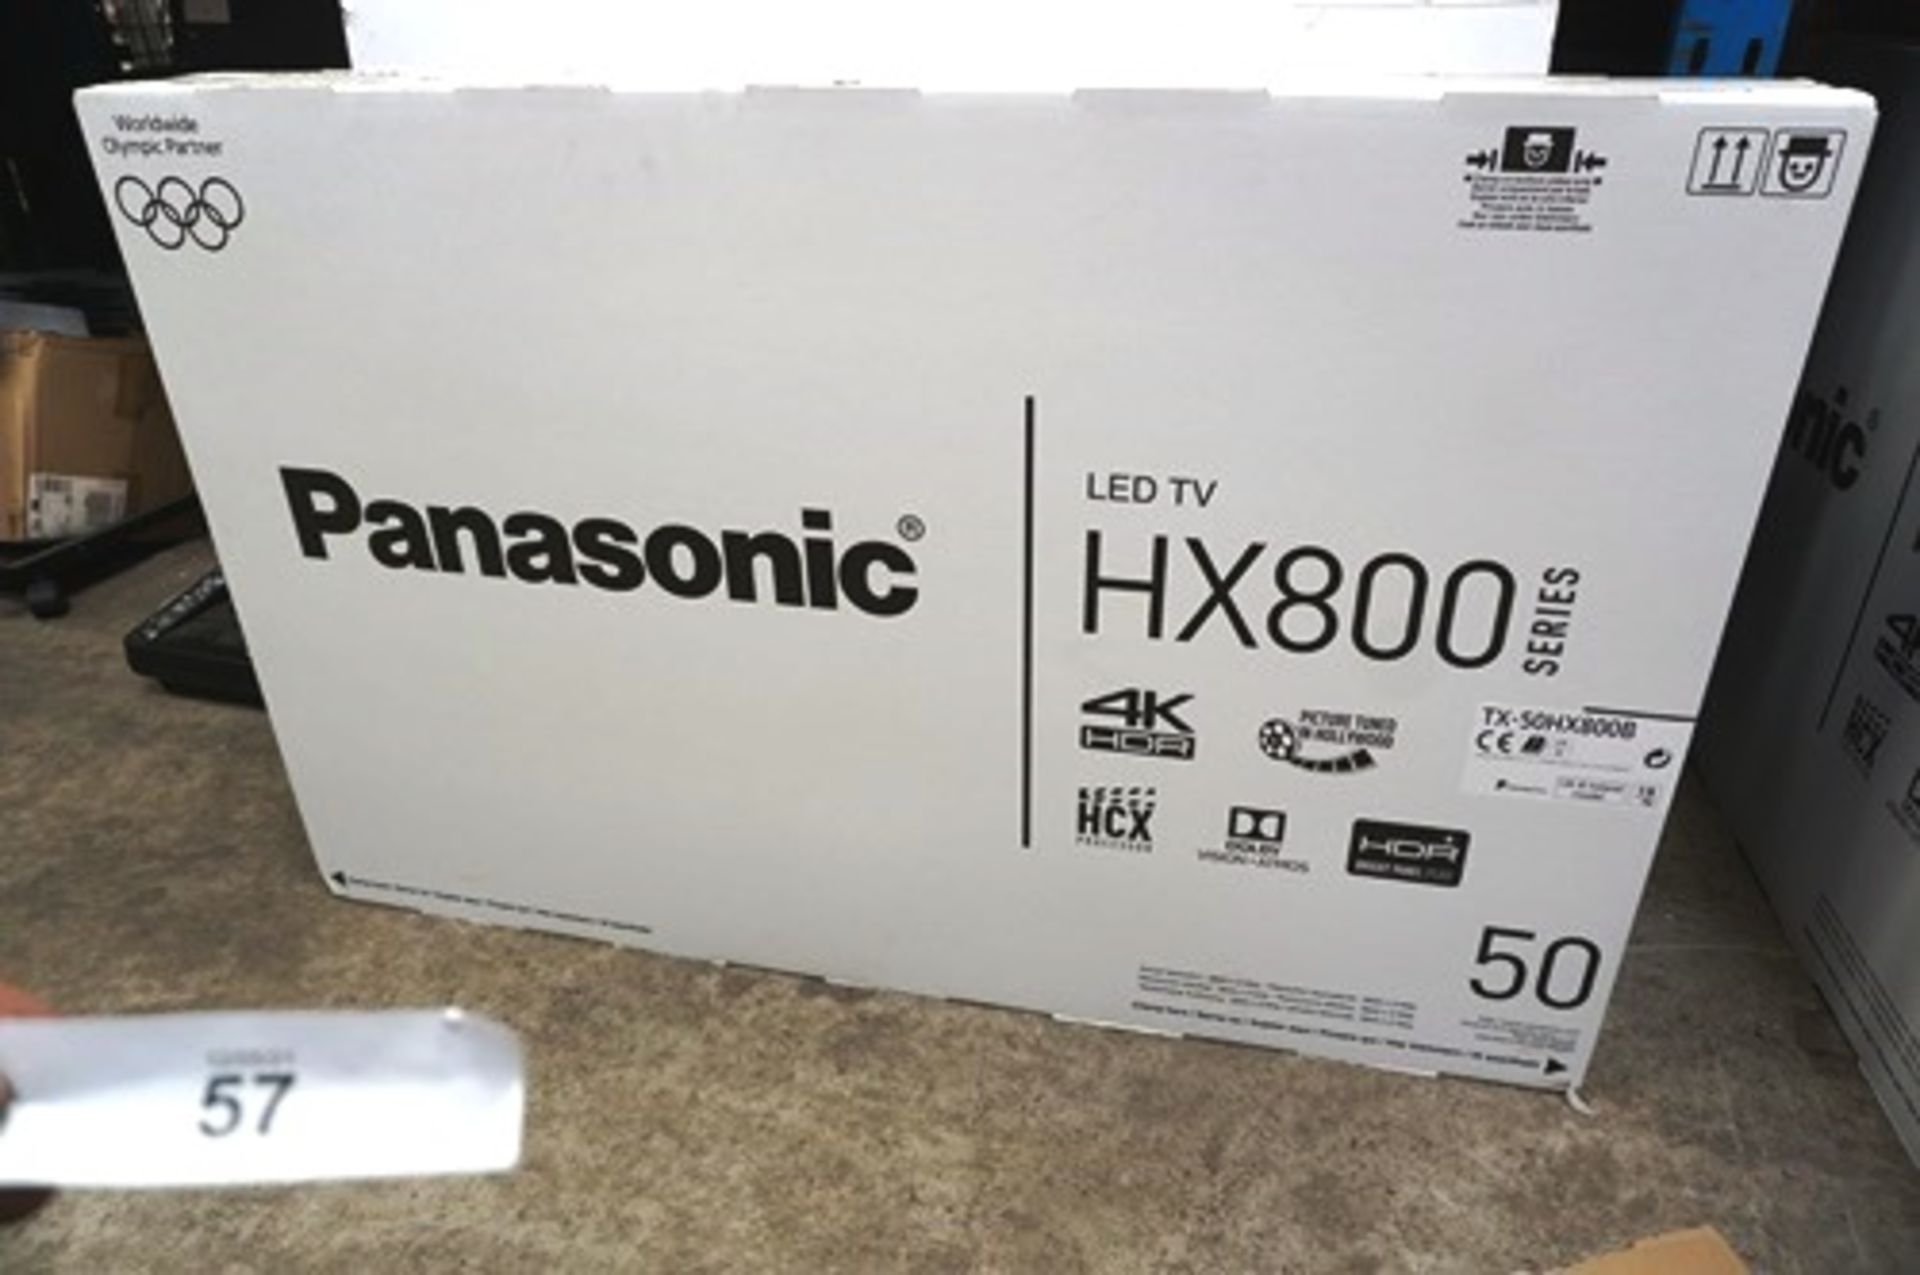 1 x Panasonic 4K 50" TV, model TX-5-0HX-800B - Sealed new in box (ES8)